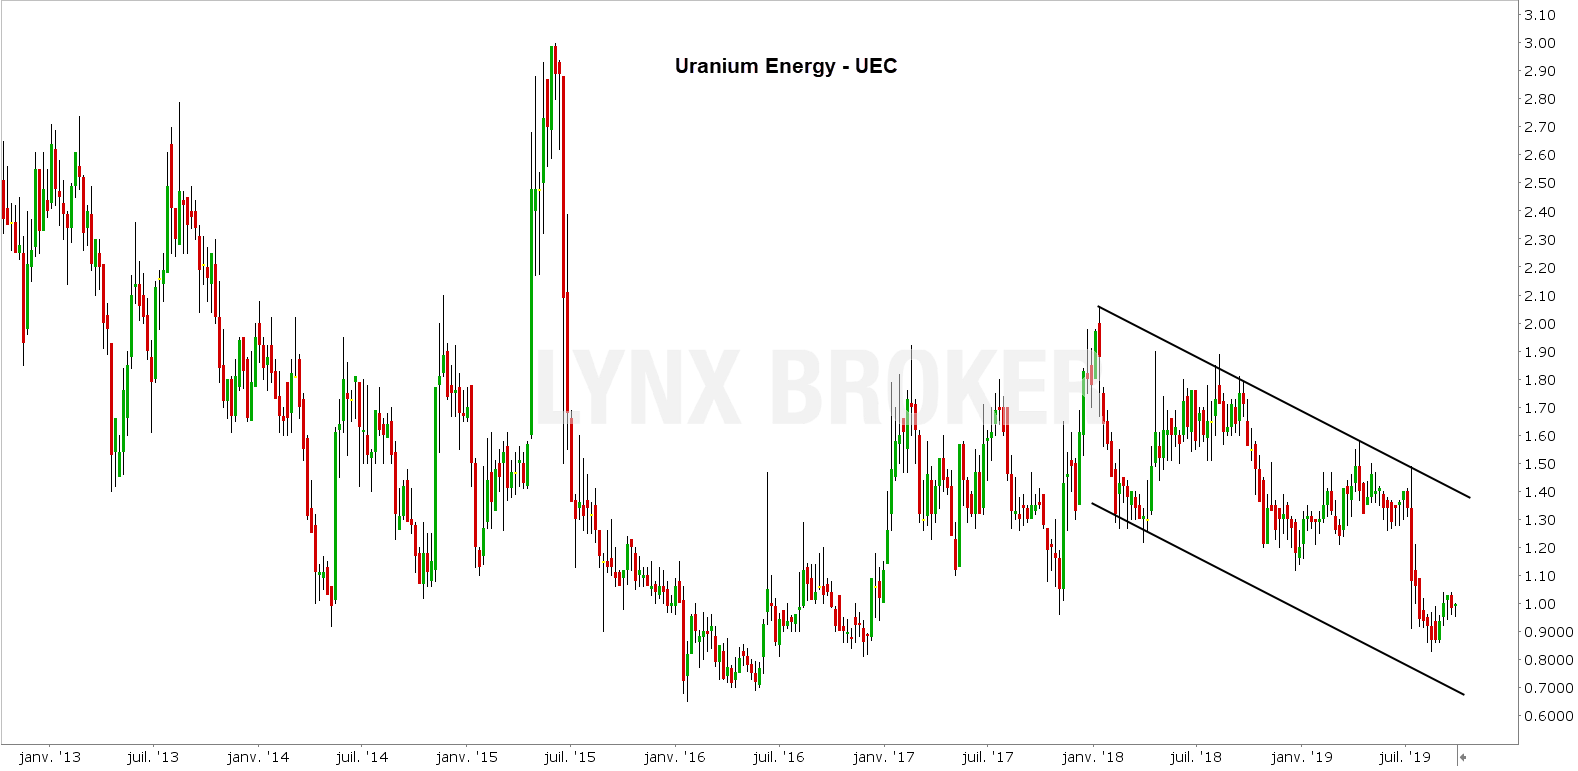 investir dans l'uranium - uranium trading - uranium energy